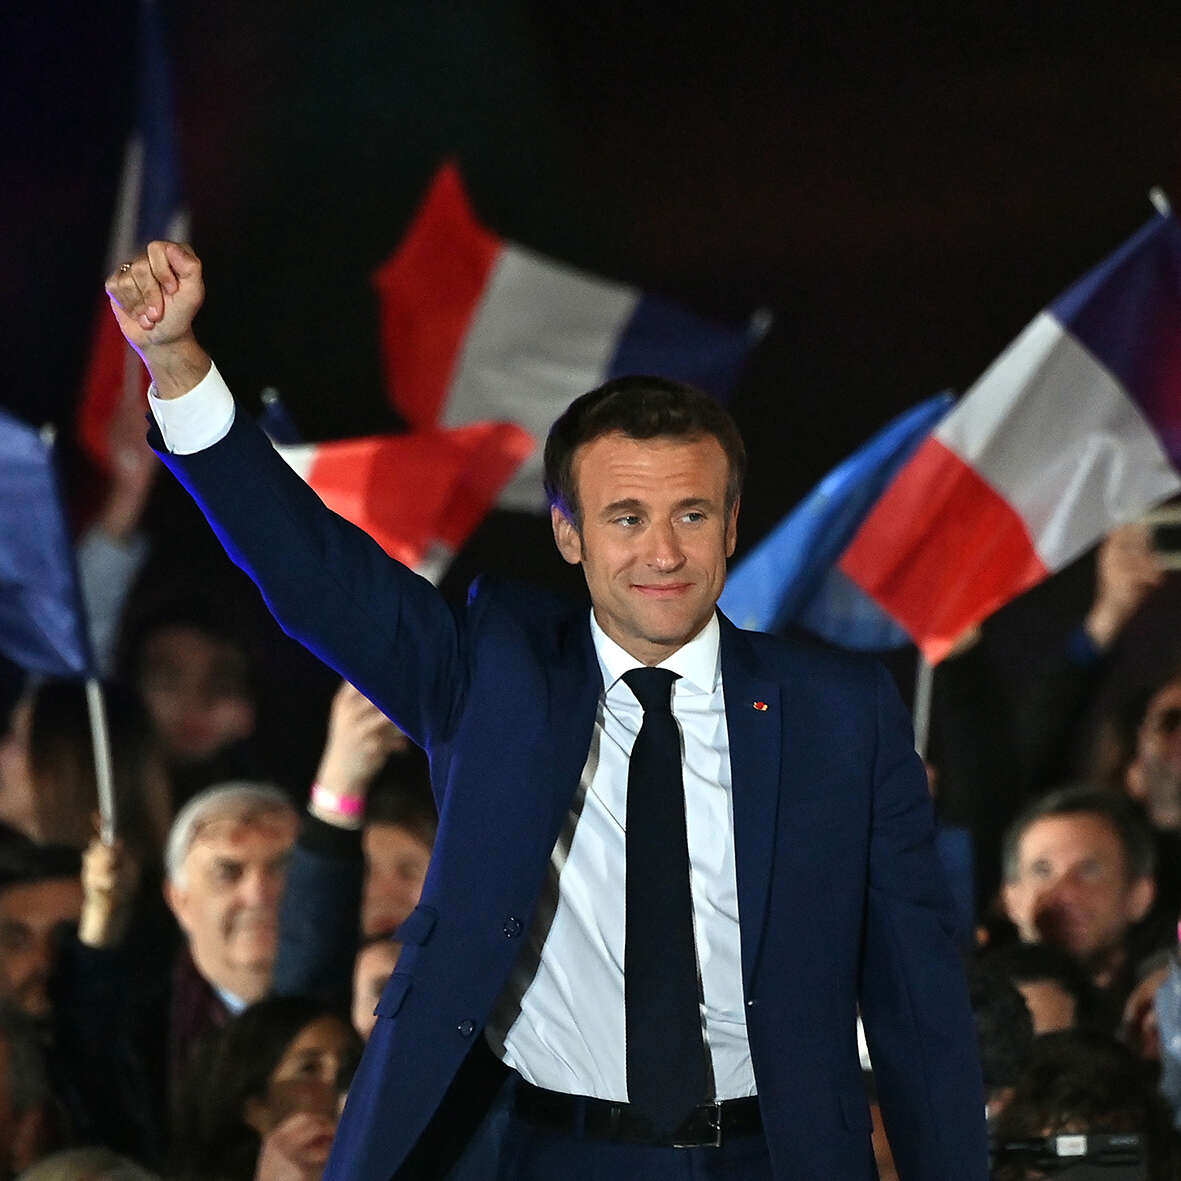 Emmanuel Macron defeats Marine Le Pen